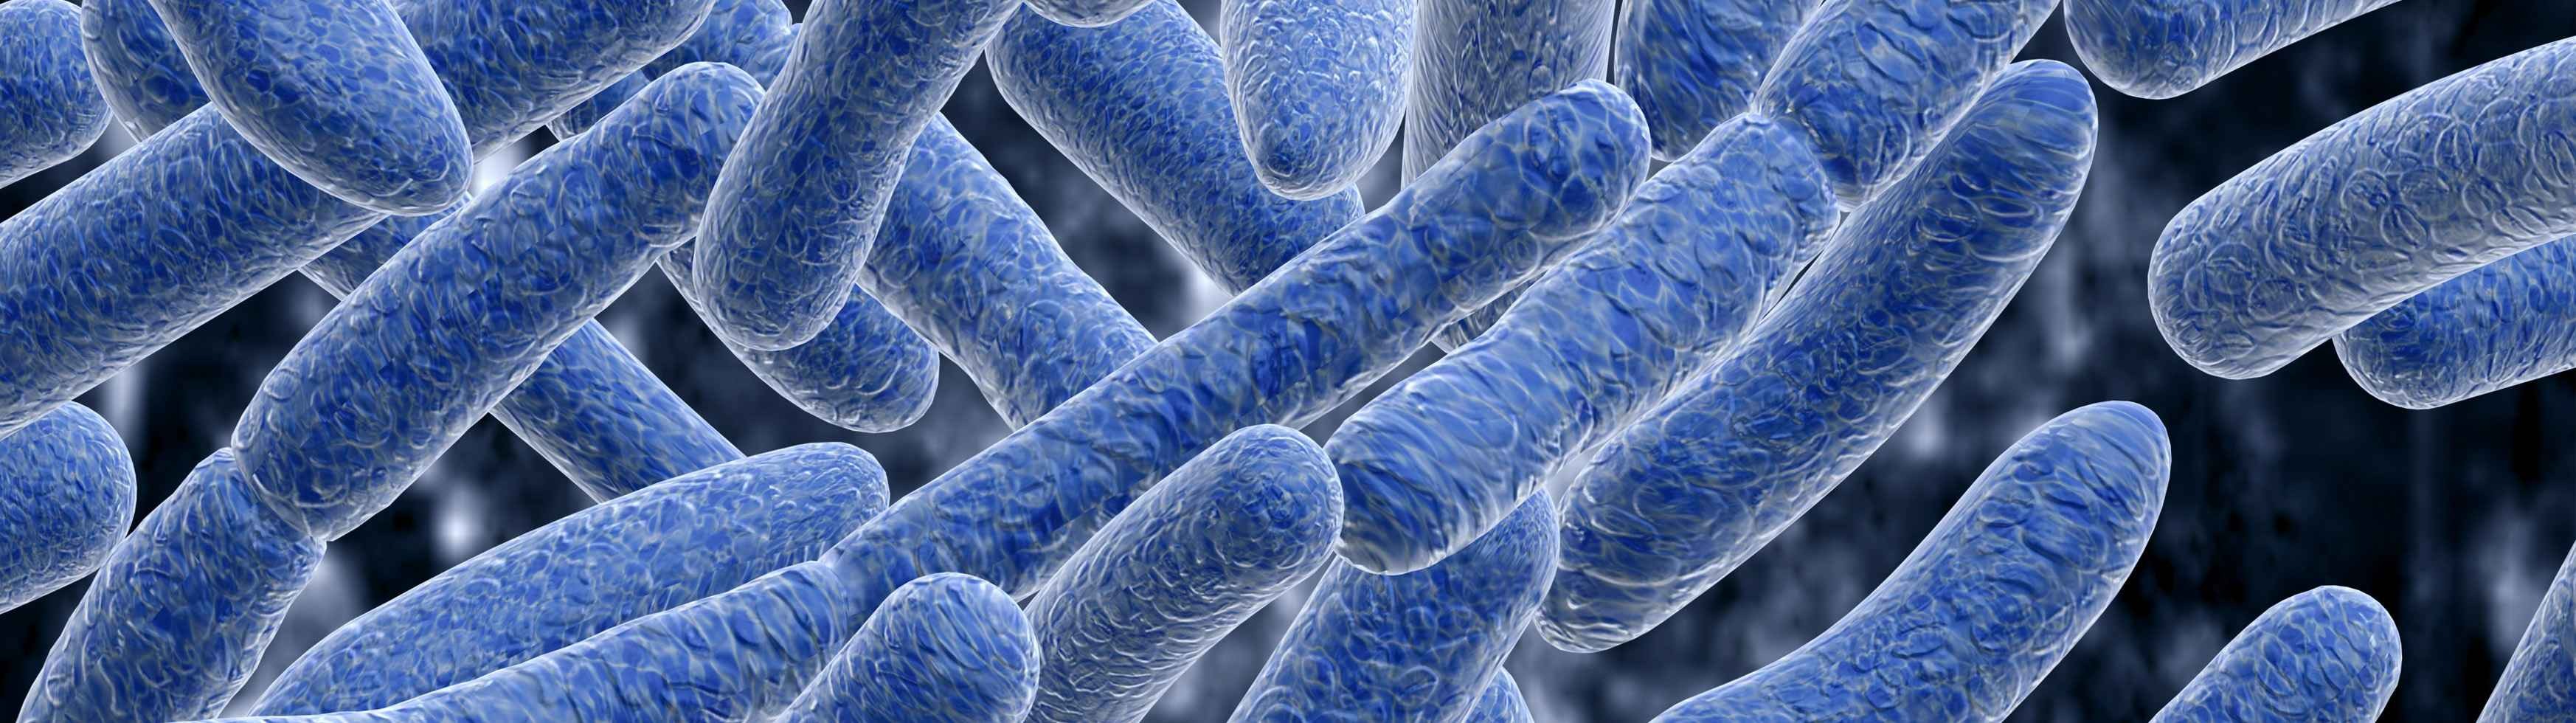 La microbiota, clave para el correcto funcionamiento de nuestro organismo